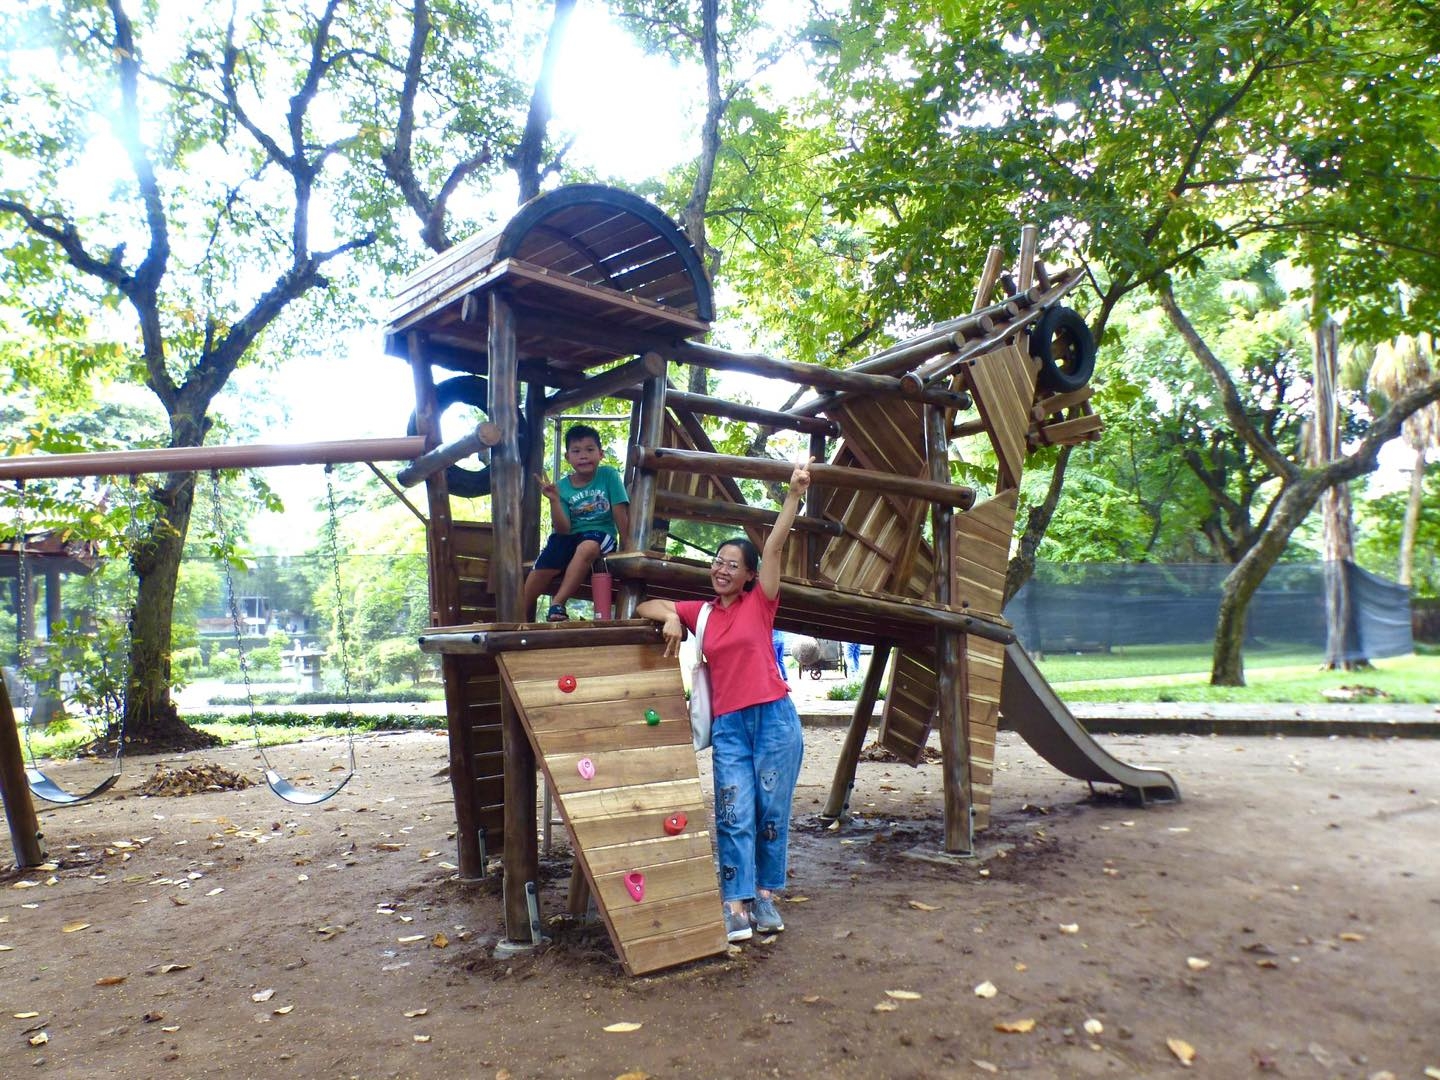 Think Playgrounds ra mắt sân chơi Thánh Gióng tại Văn Miếu – Quốc Tử Giám